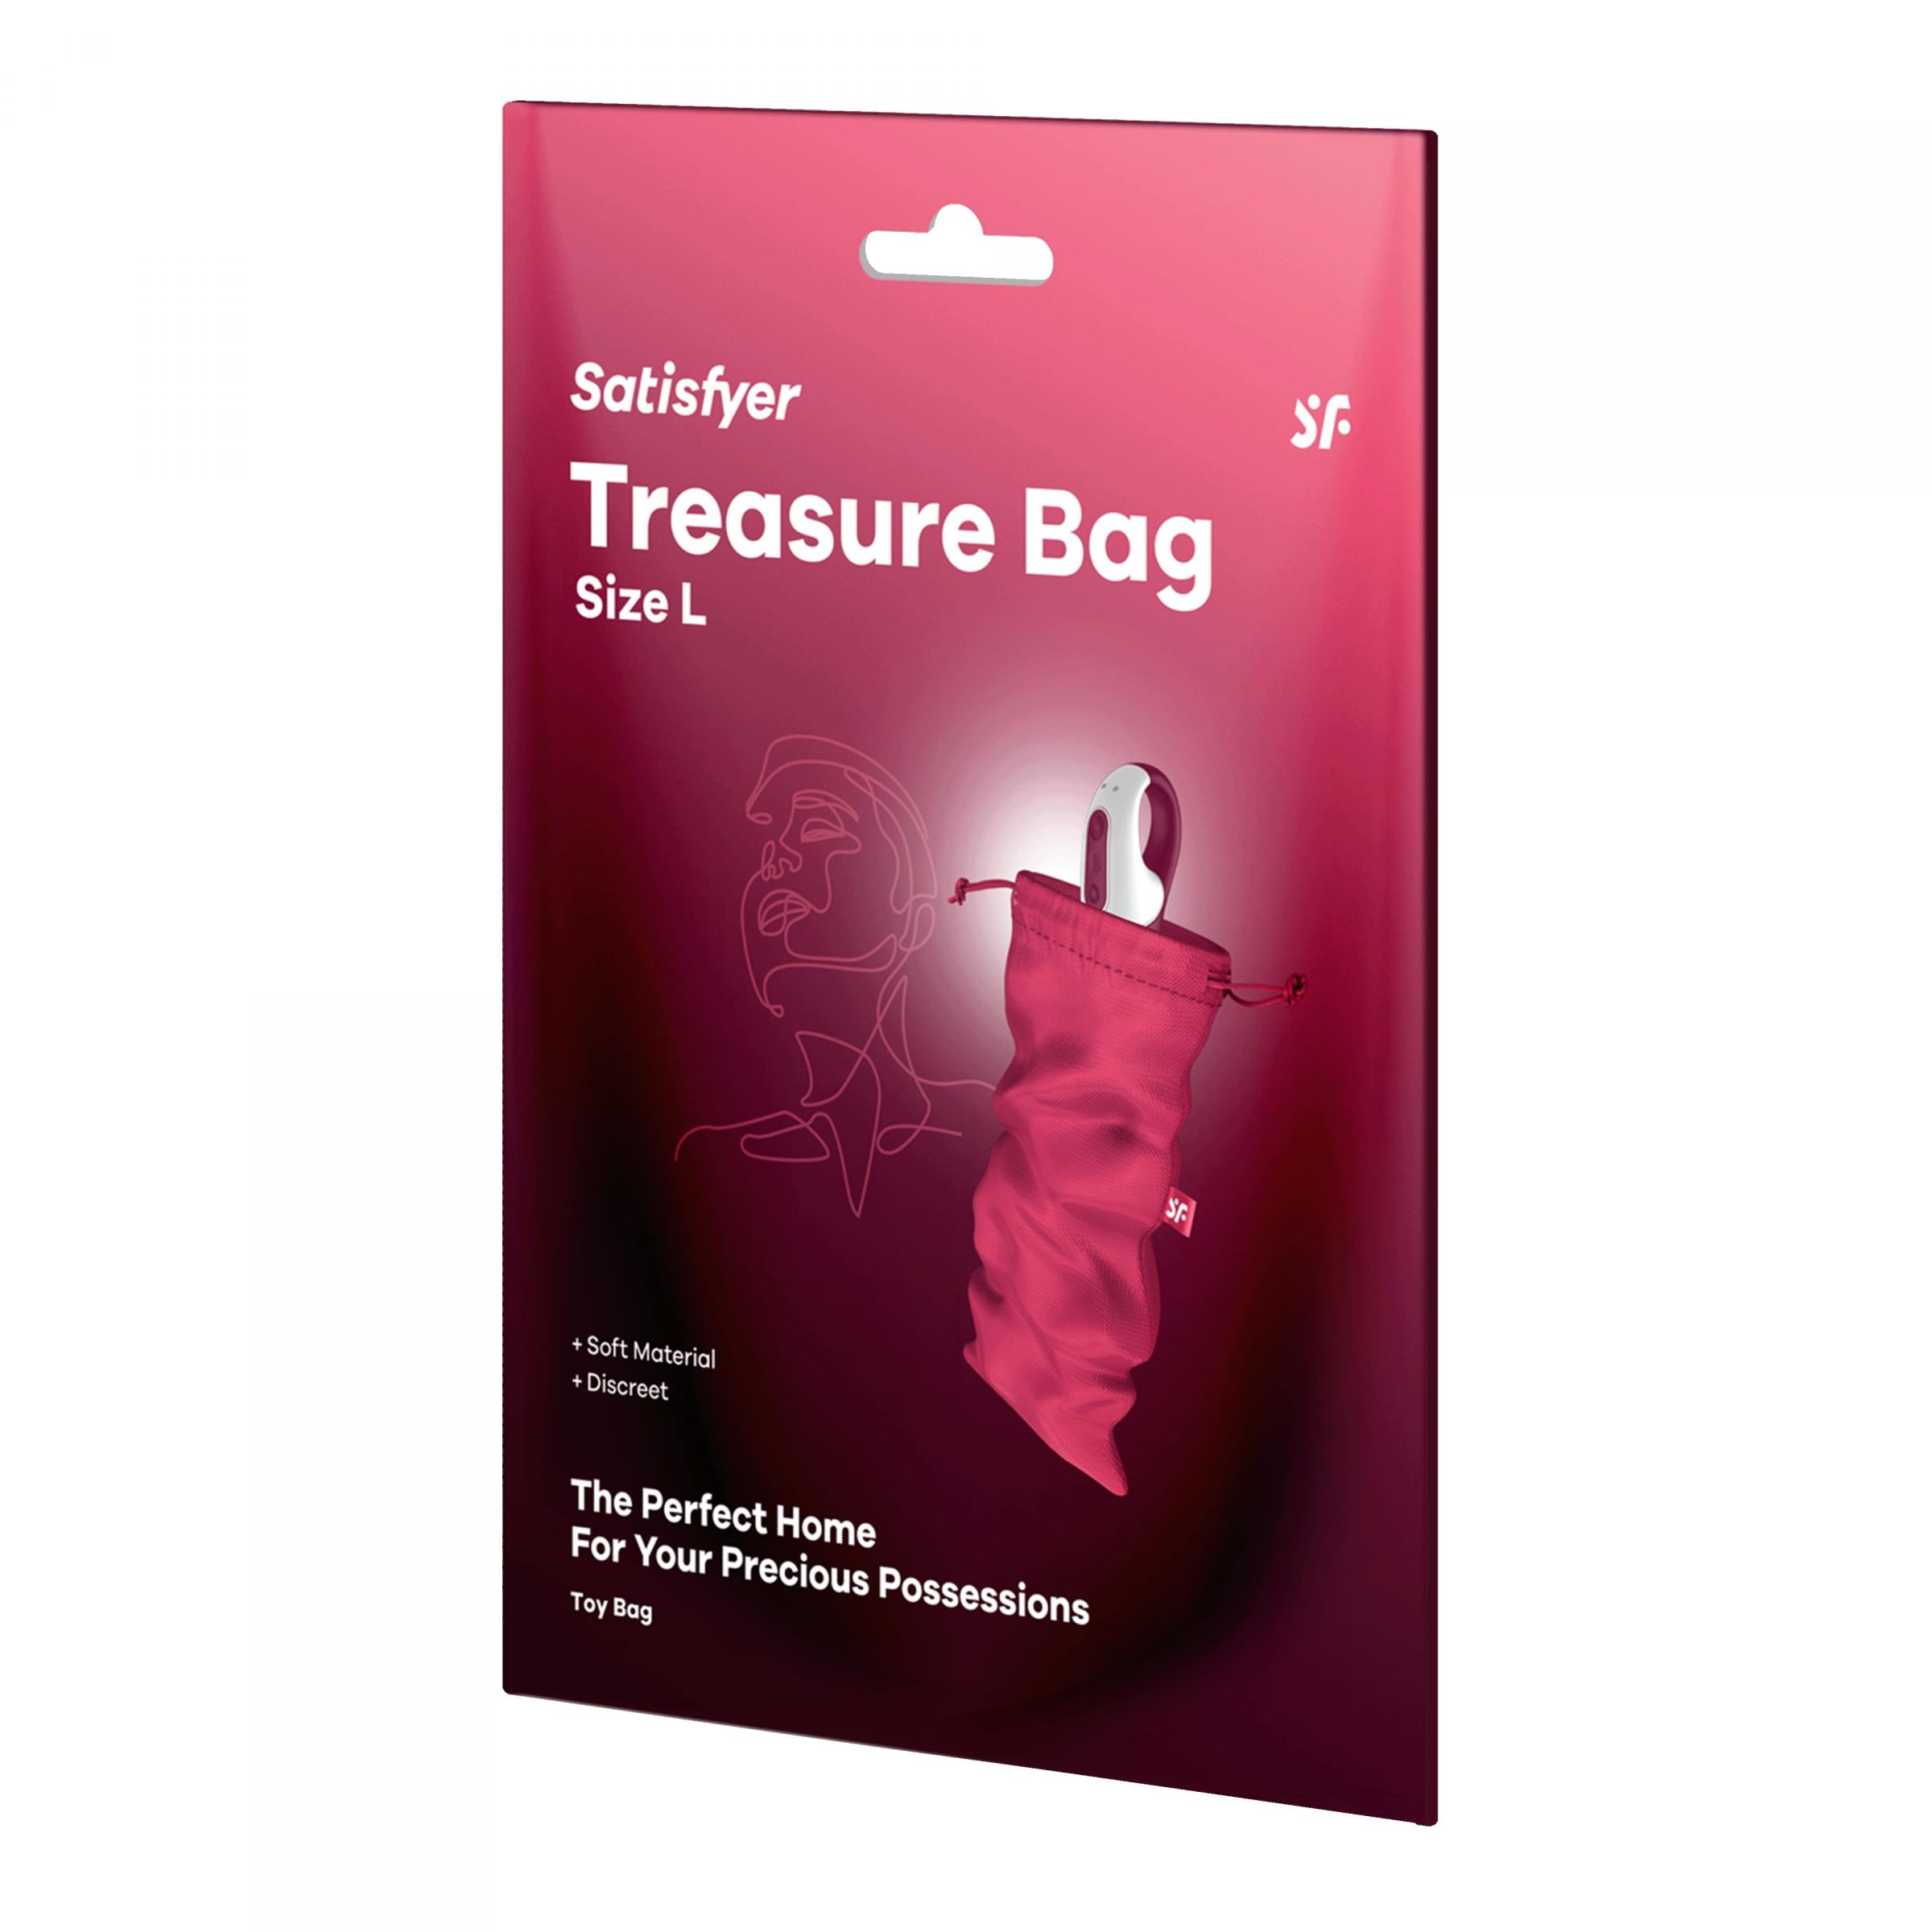 Satisfyer Treasure Bag – специализированный мешочек для хранения девайсов. Данный мешочек сделан из прочного материала, который долго и качественно прослужит вложенным в него изделиям. Материал: нейлон, полиэстер, полипропилен. Размеры - 26х15 см.